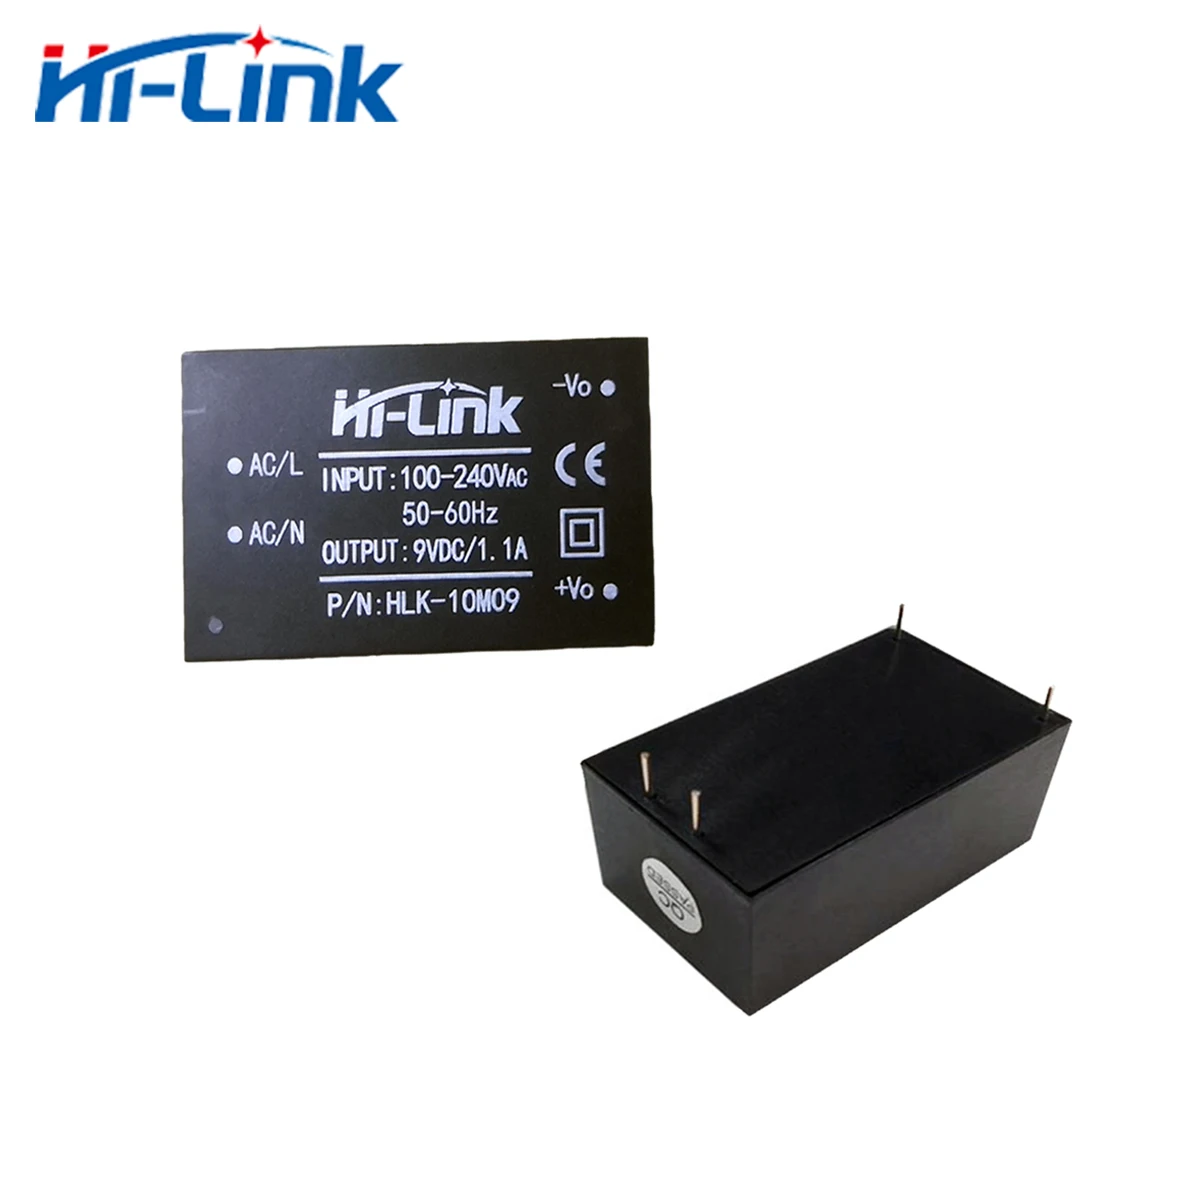 Envío gratis de Hi-Link 2pcs 220v 9V 10W AC DC aislado hogar inteligente compacto de conmutación de potencia mini supplymodule HLK-10M09 Imagen 0